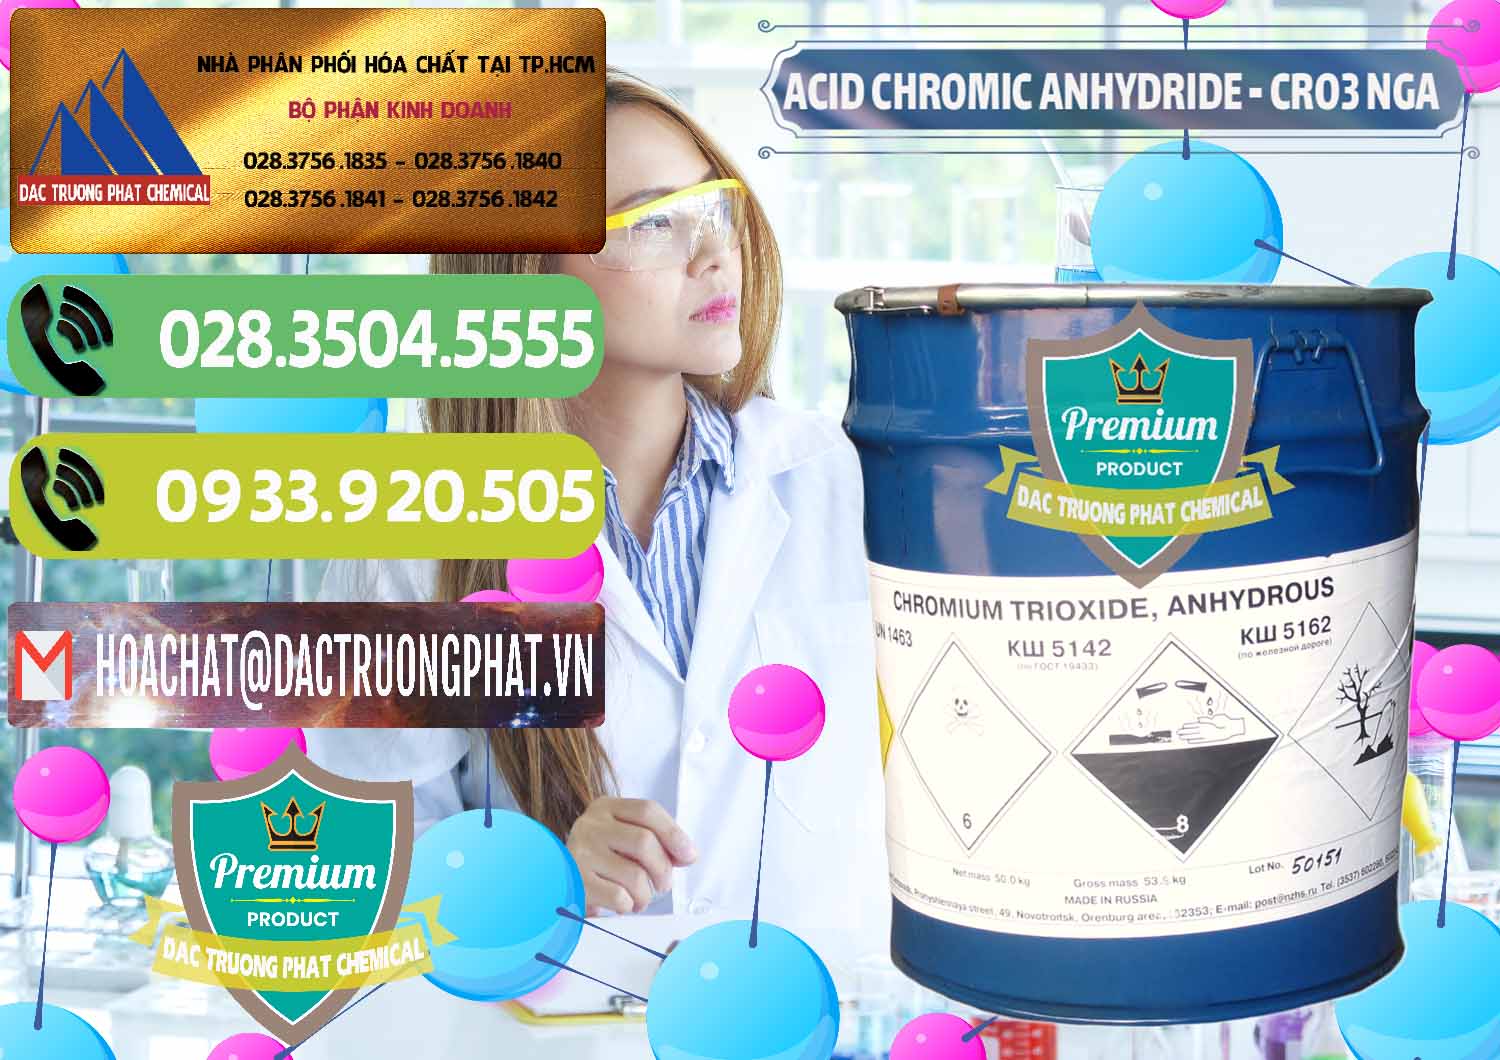 Chuyên bán _ phân phối Acid Chromic Anhydride - Cromic CRO3 Nga Russia - 0006 - Phân phối ( cung cấp ) hóa chất tại TP.HCM - hoachatmientay.vn